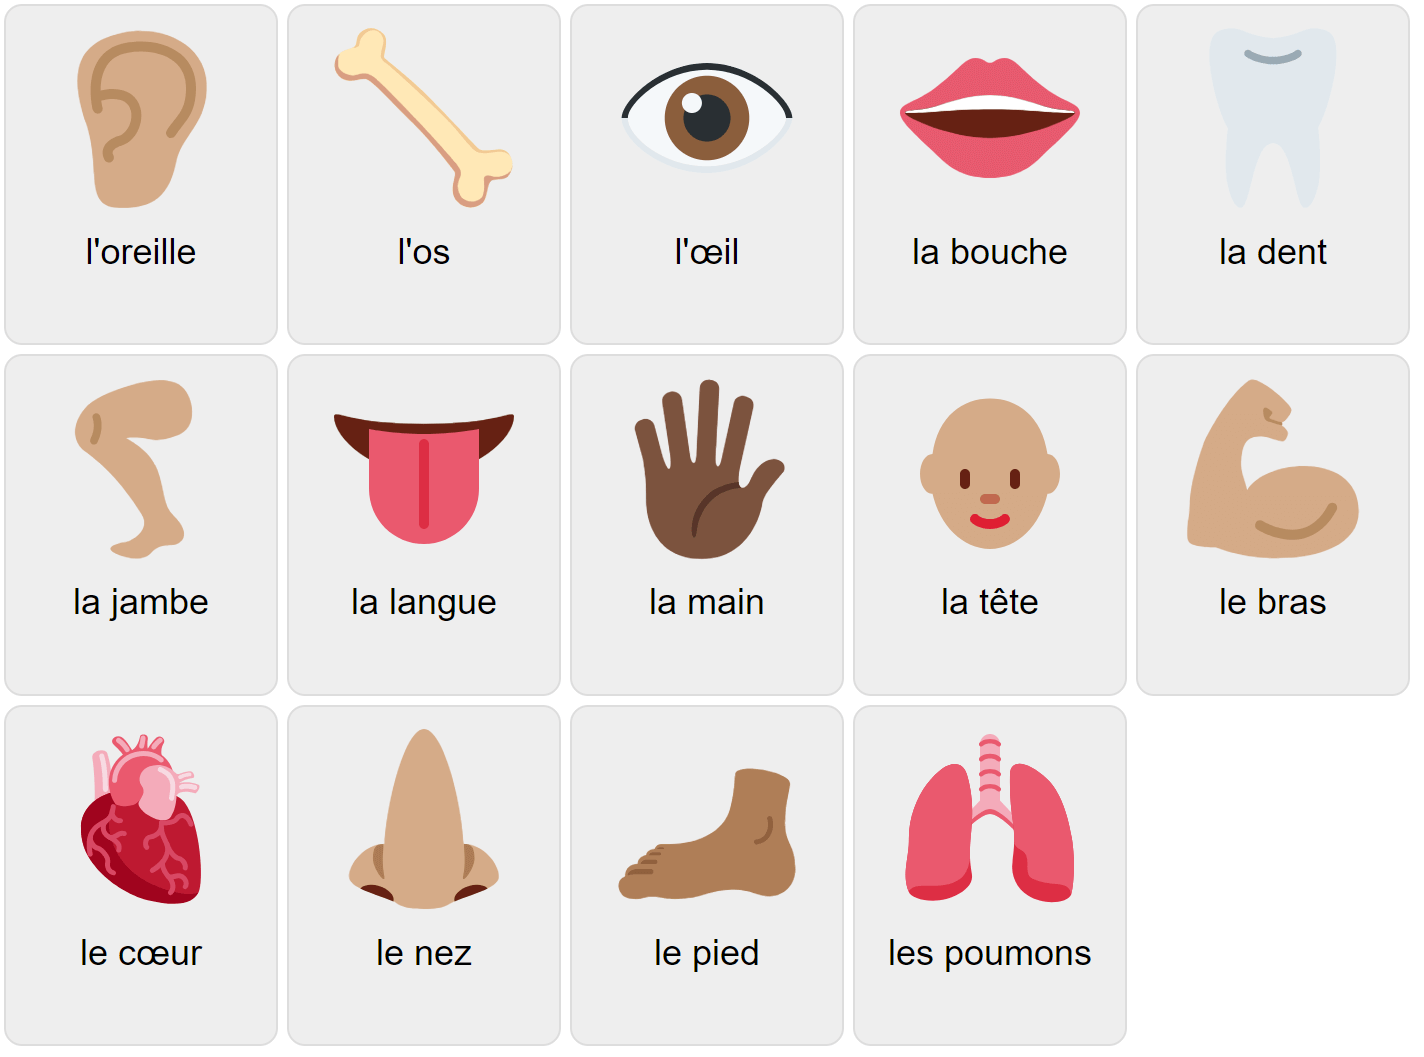 Körperteile auf Französisch